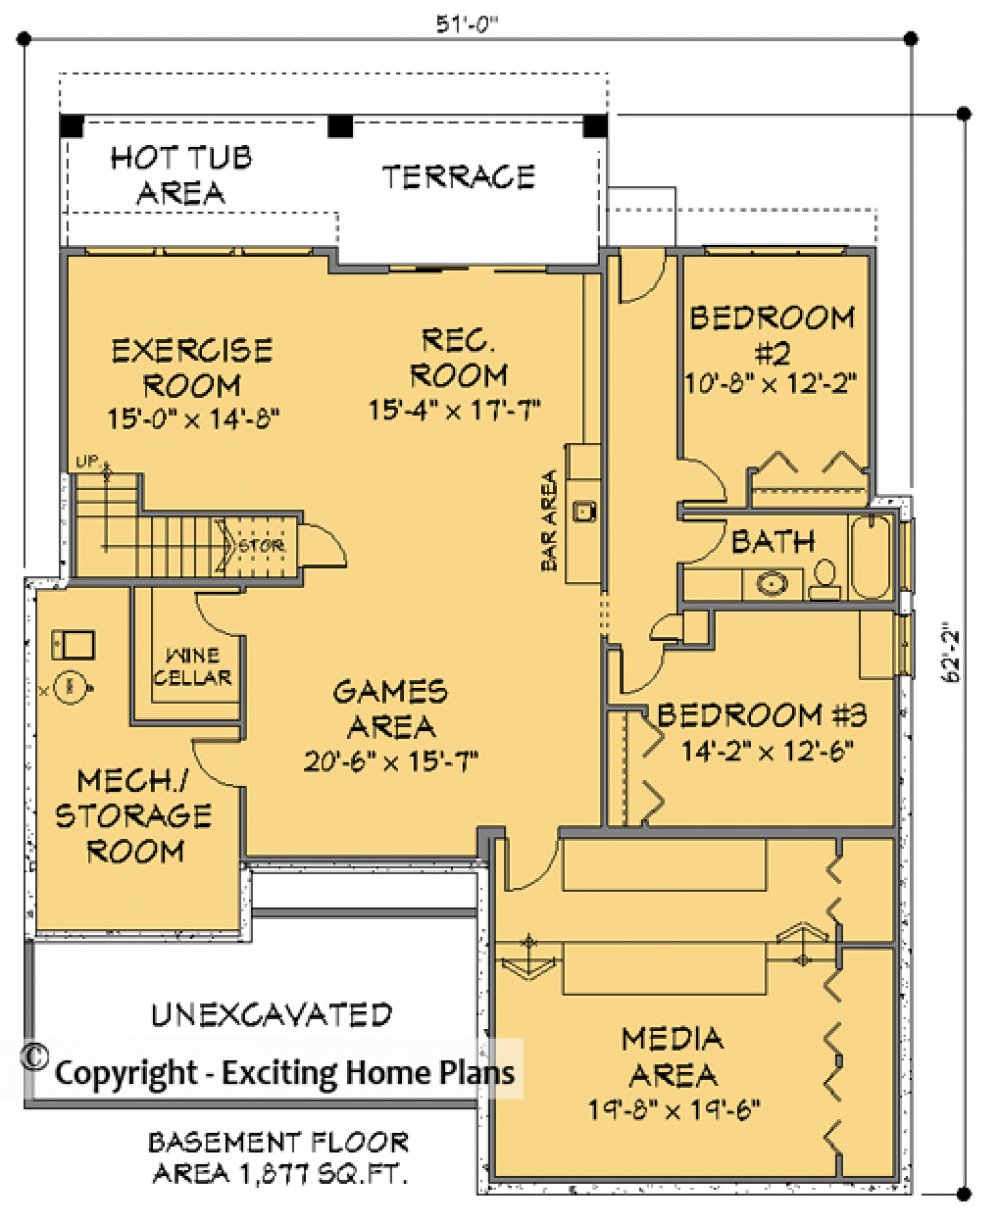 House Plan E1173-10 Lower Floor Plan